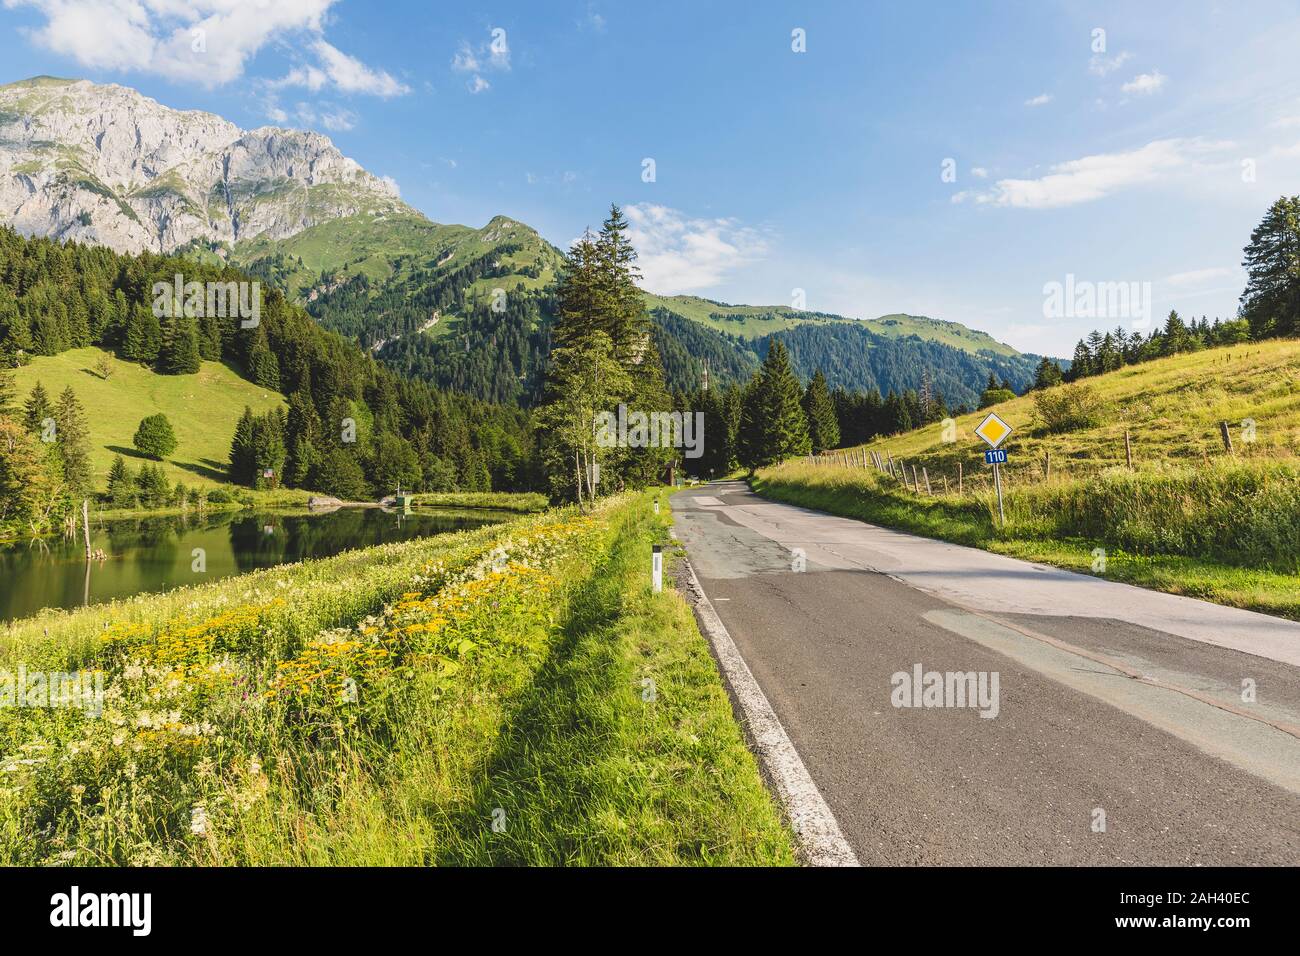 Austria, Carinzia, vista panoramica del vuoto su strada forestale nella valle delle Alpi Carniche in estate Foto Stock